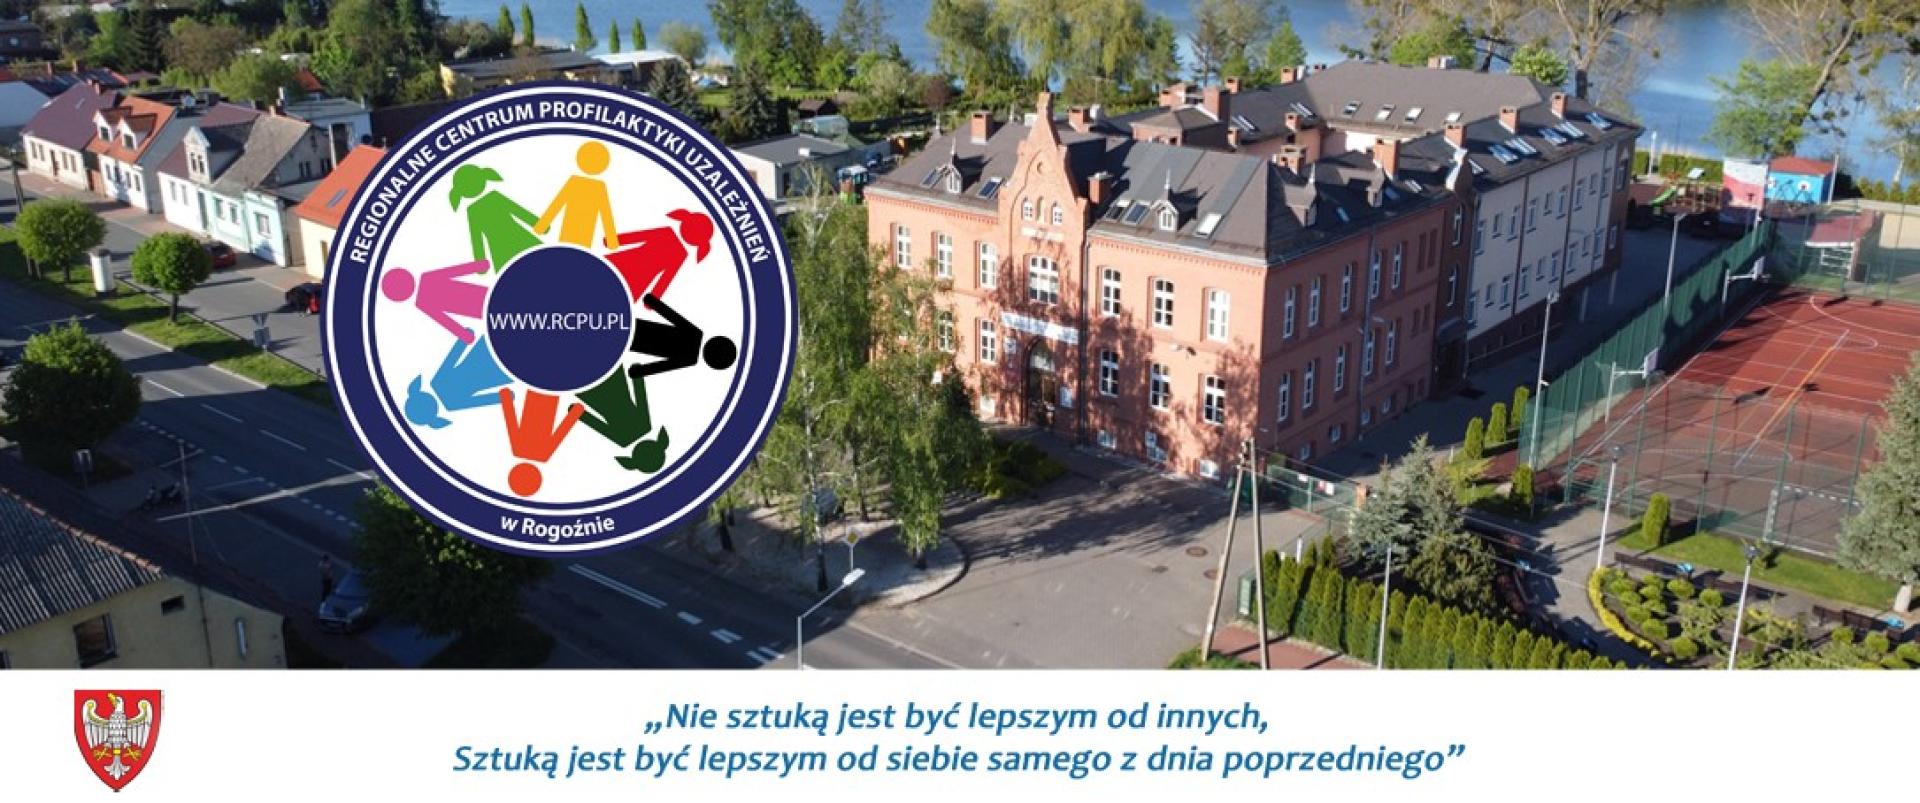 13 lat temu swoją działalność rozpoczęło Regionalne Centrum Profilaktyki Uzależnień dla Dzieci i Młodzieży w Rogoźnie - zobacz więcej